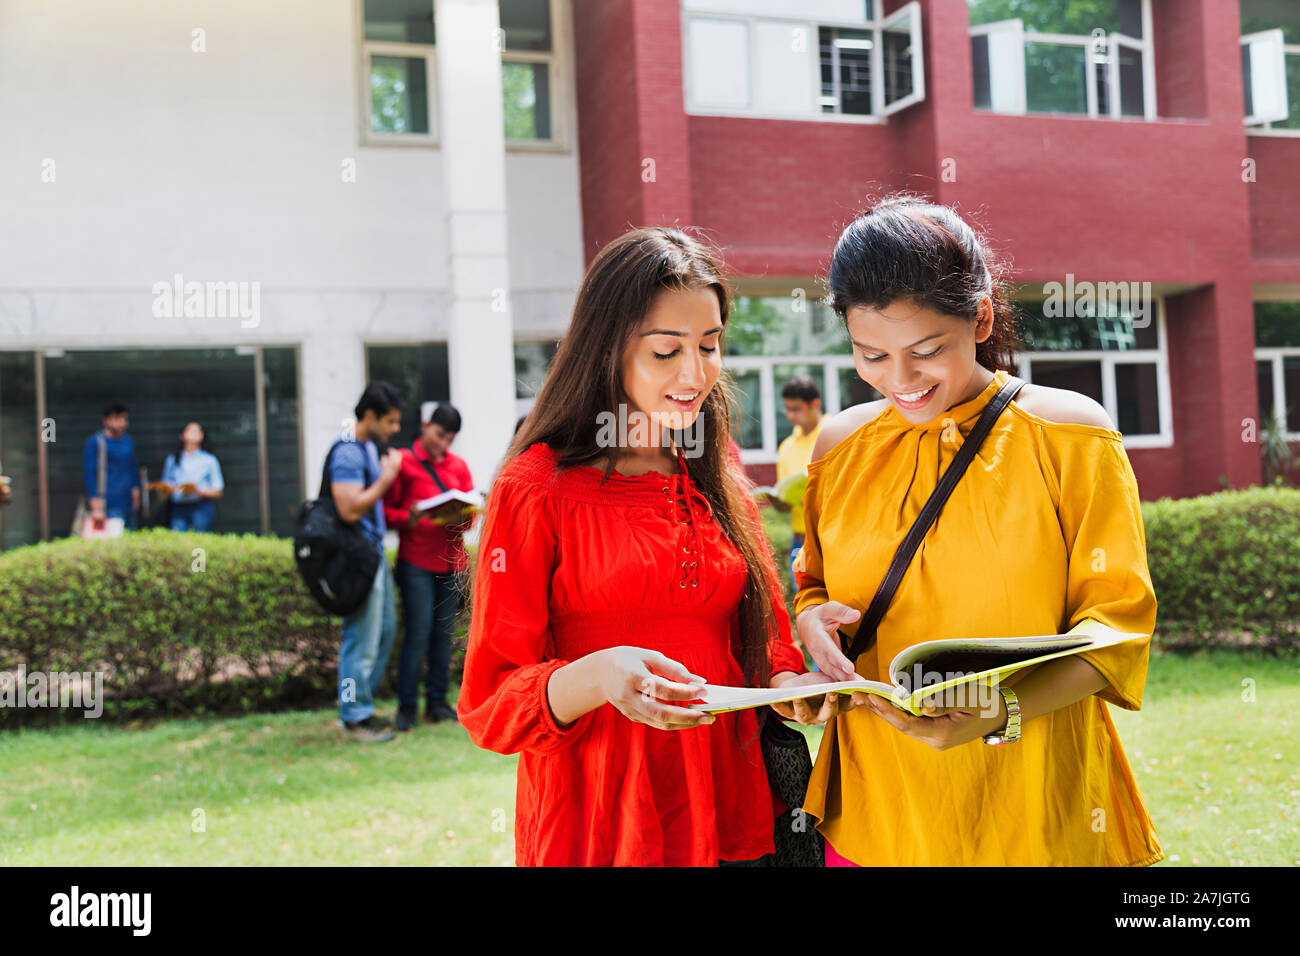 Deux jeunes femmes College Student Amis Lire livre ensemble l'étude de l'éducation Campus Universitaire In-Outside Banque D'Images